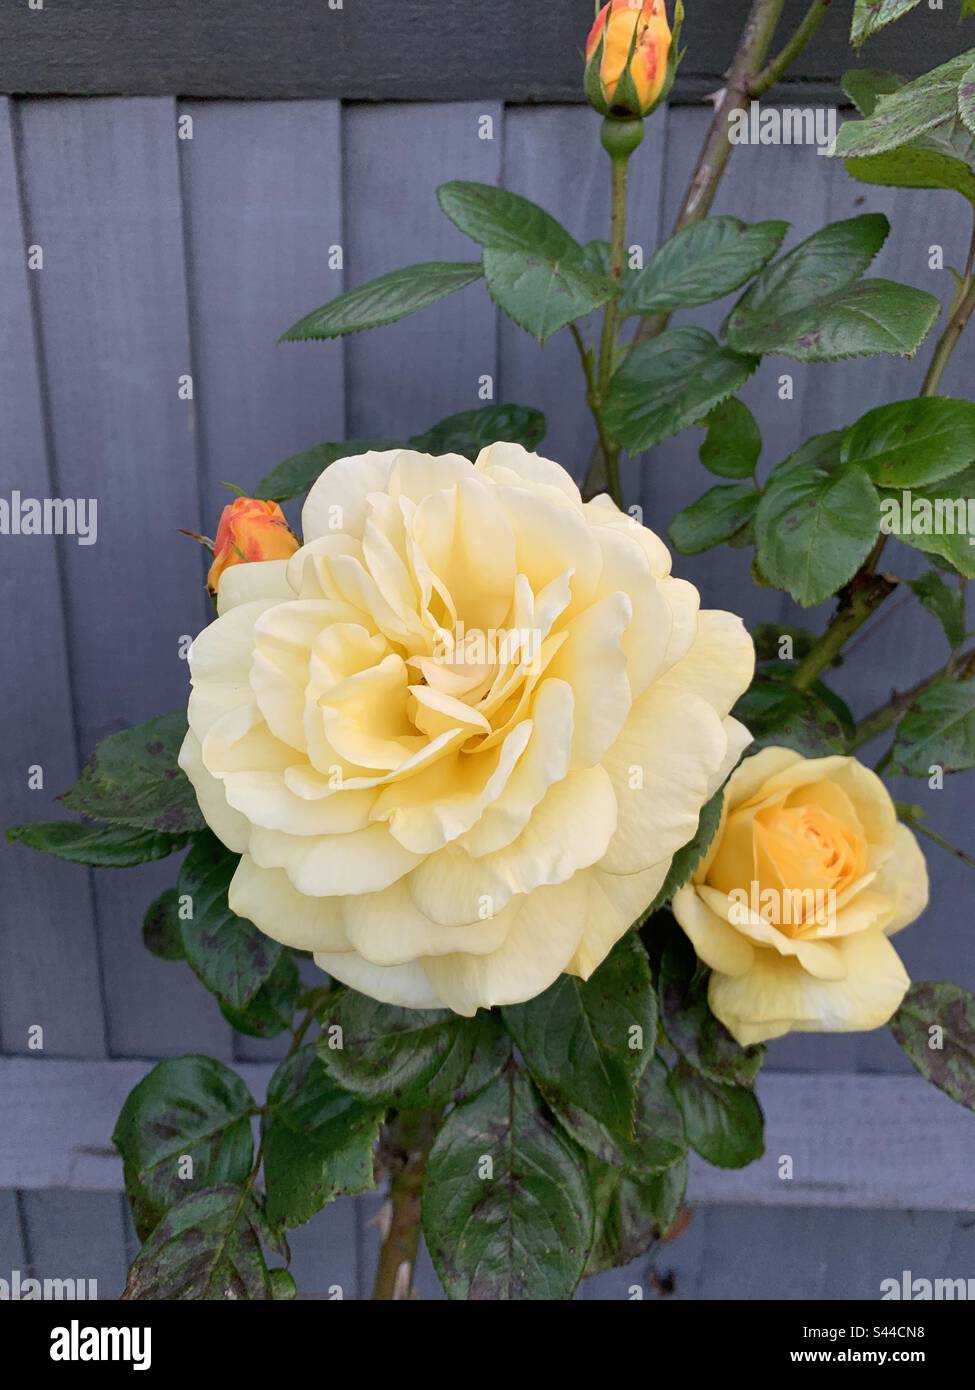 Magnifique rosier jaune avec une grande fleur, des feuilles et des bourgeons avec clôture grise derrière. Banque D'Images